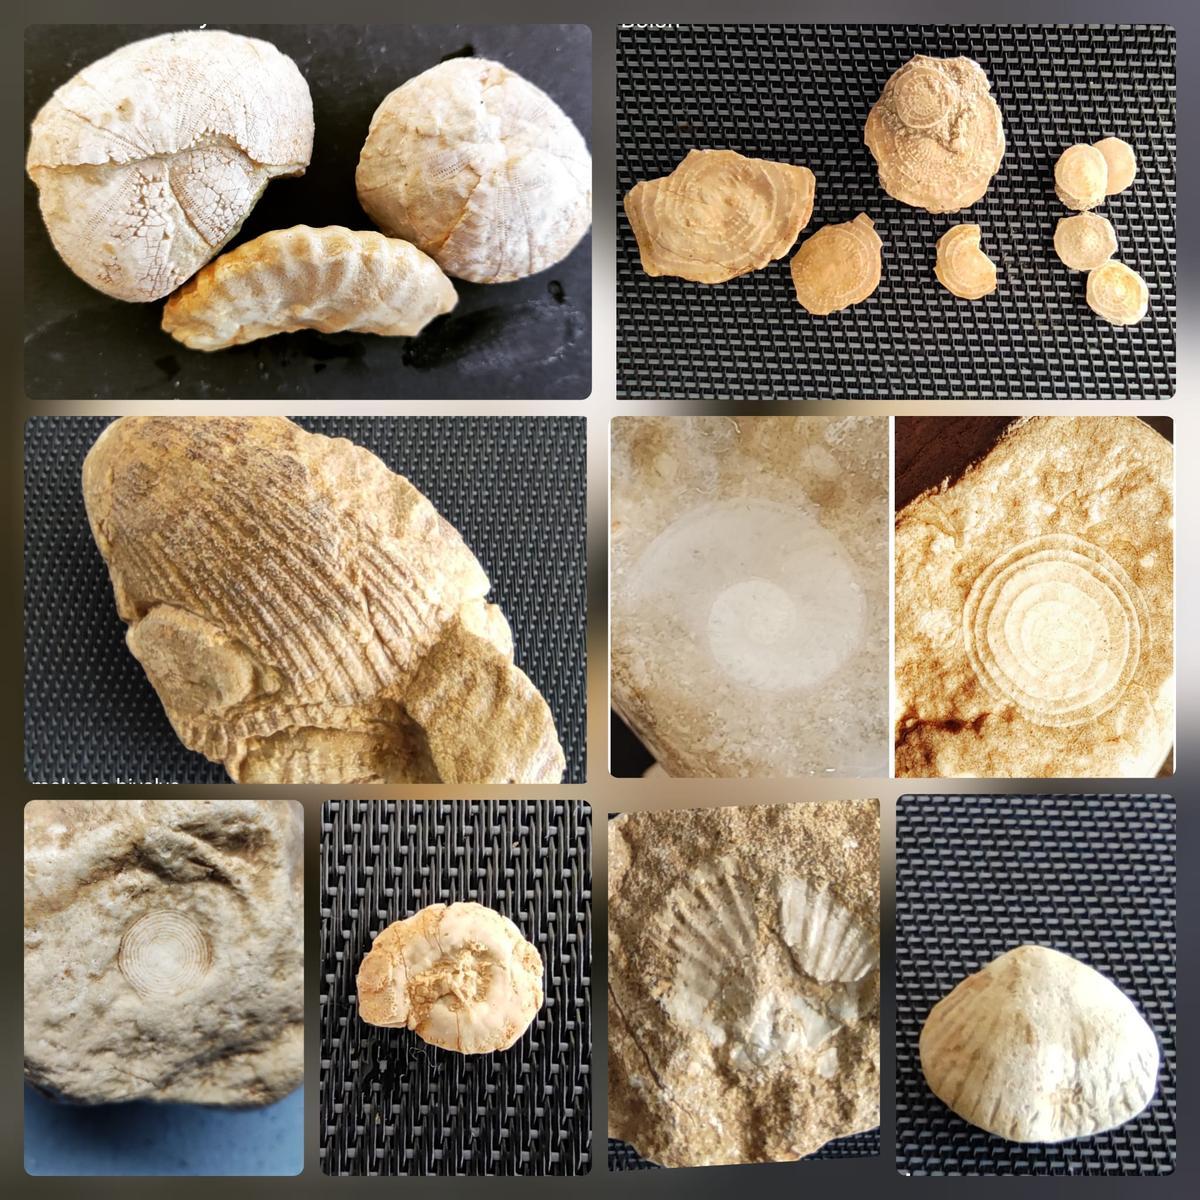 Composición del tipo de fósiles que se pueden encontrar en el Valle de Elda.